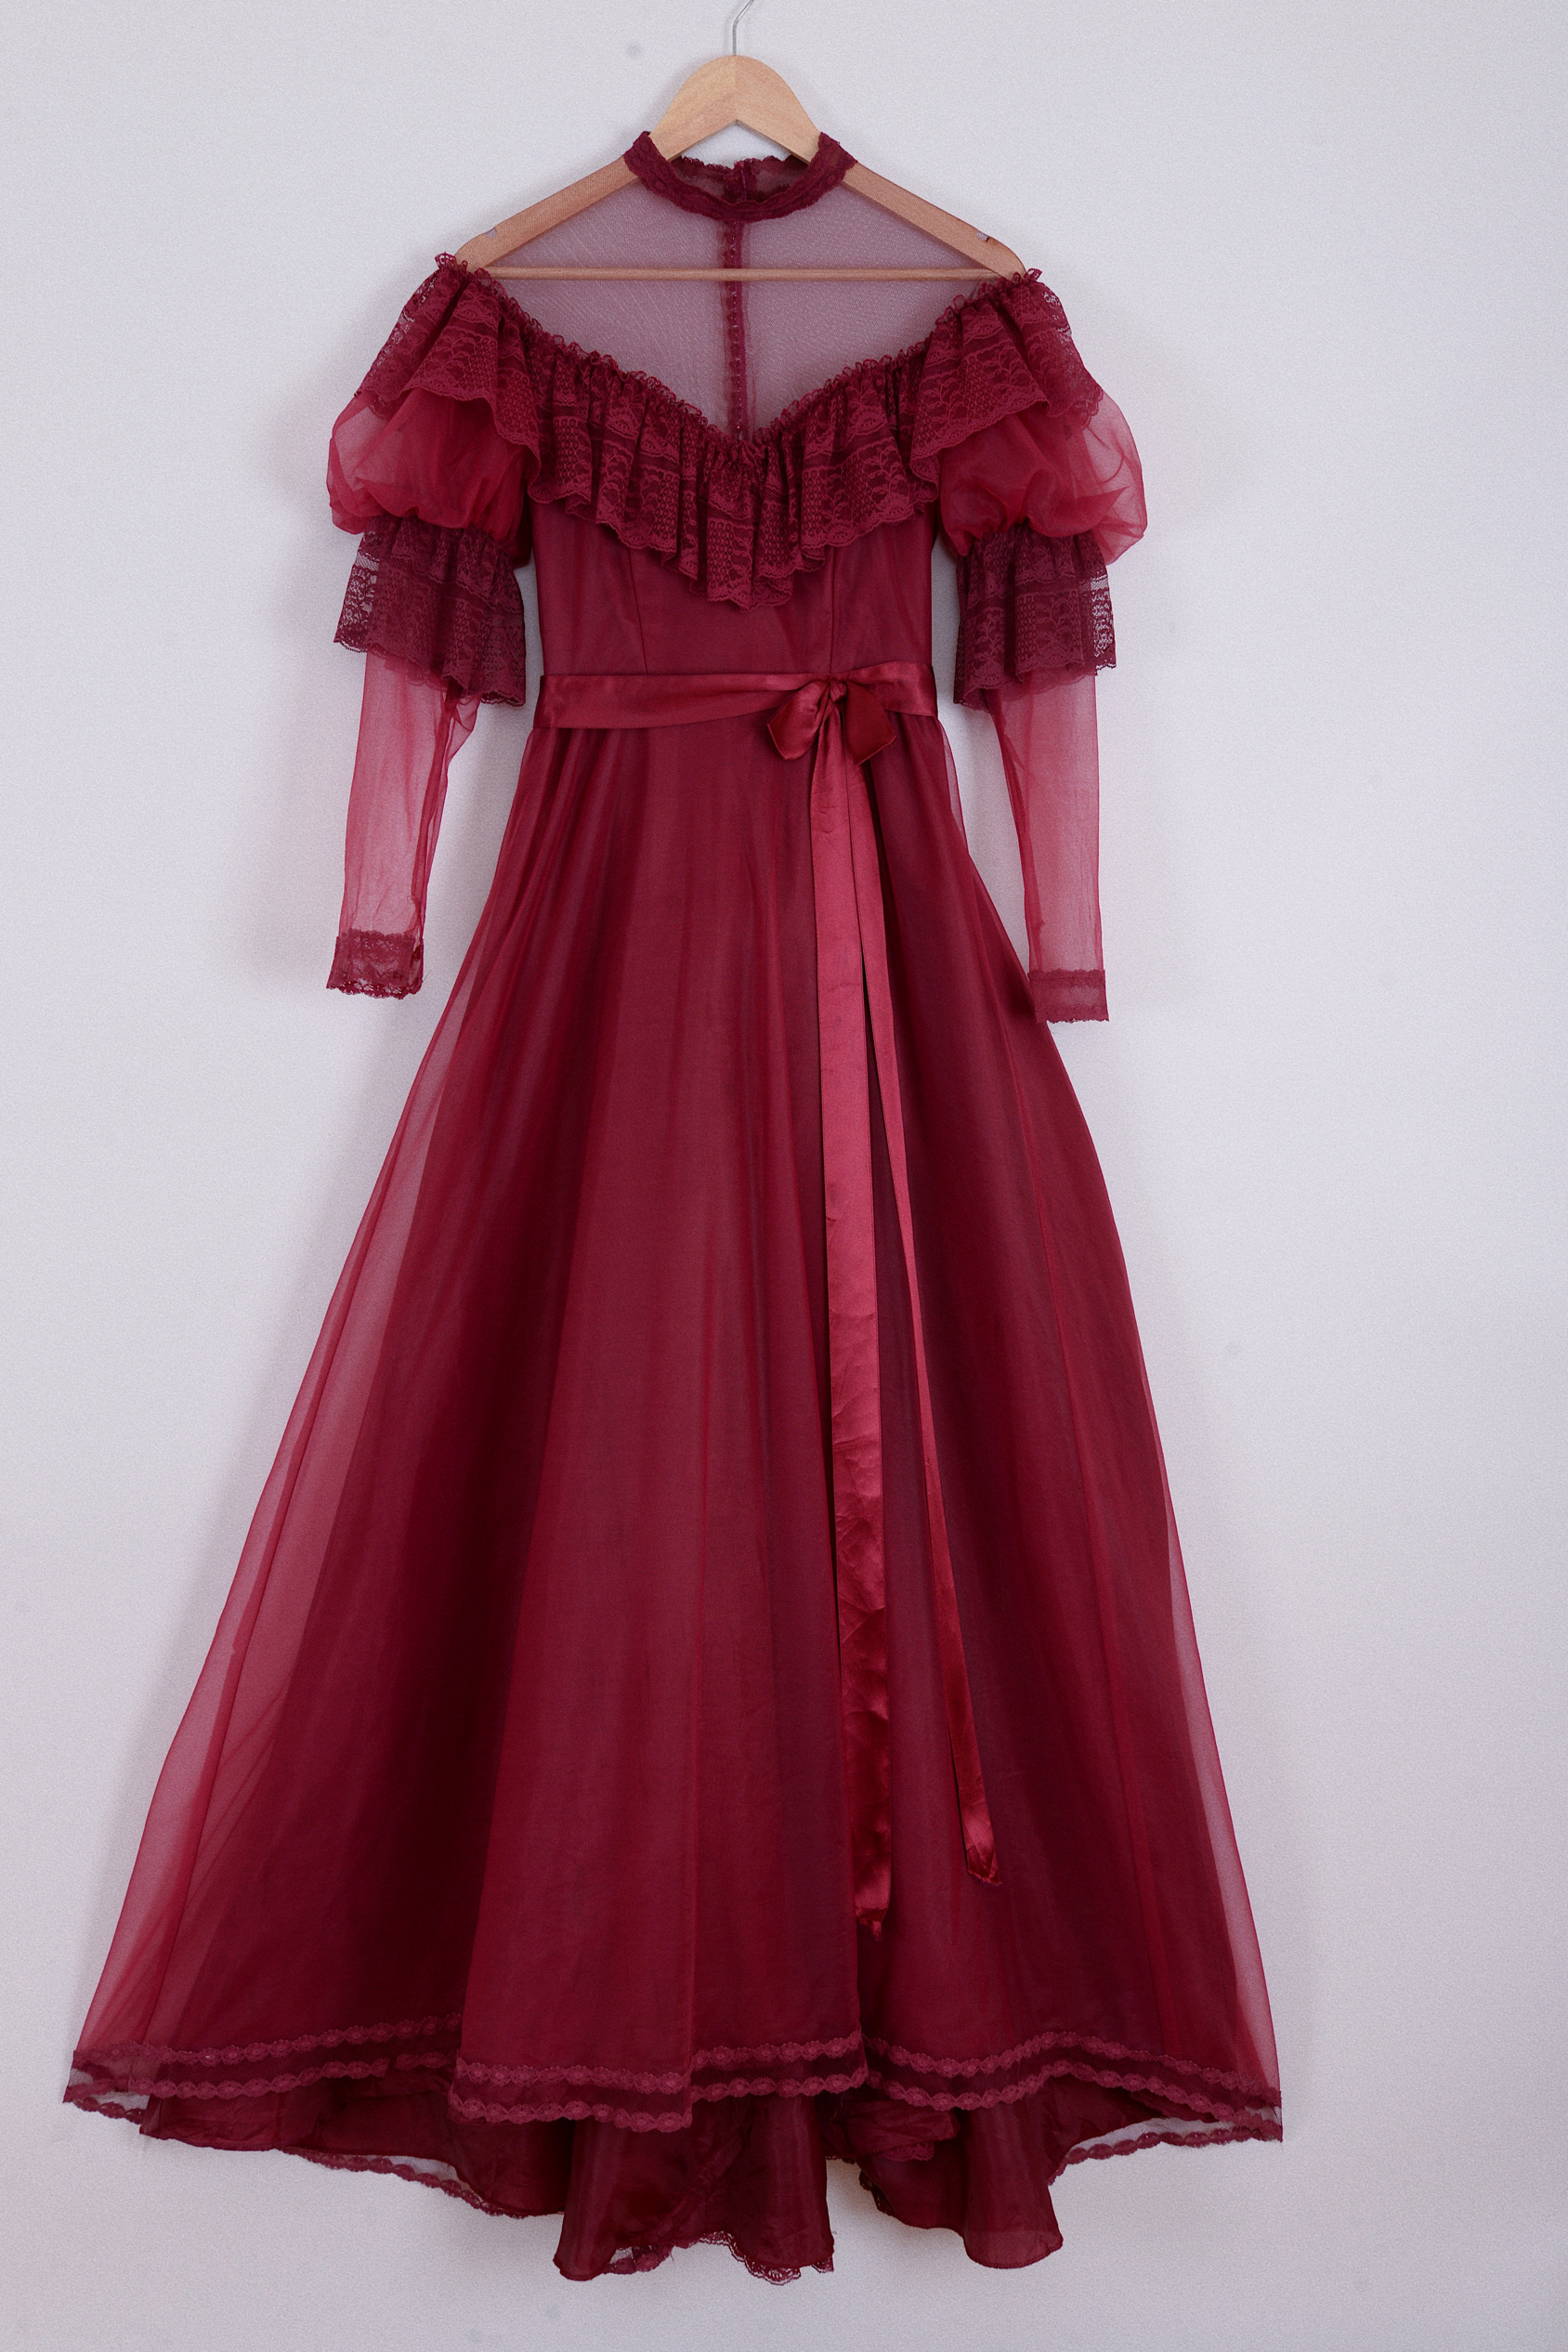 葡萄酒红色 超美礼服/1970s USA制 双层泡泡袖蕾丝倒三角领